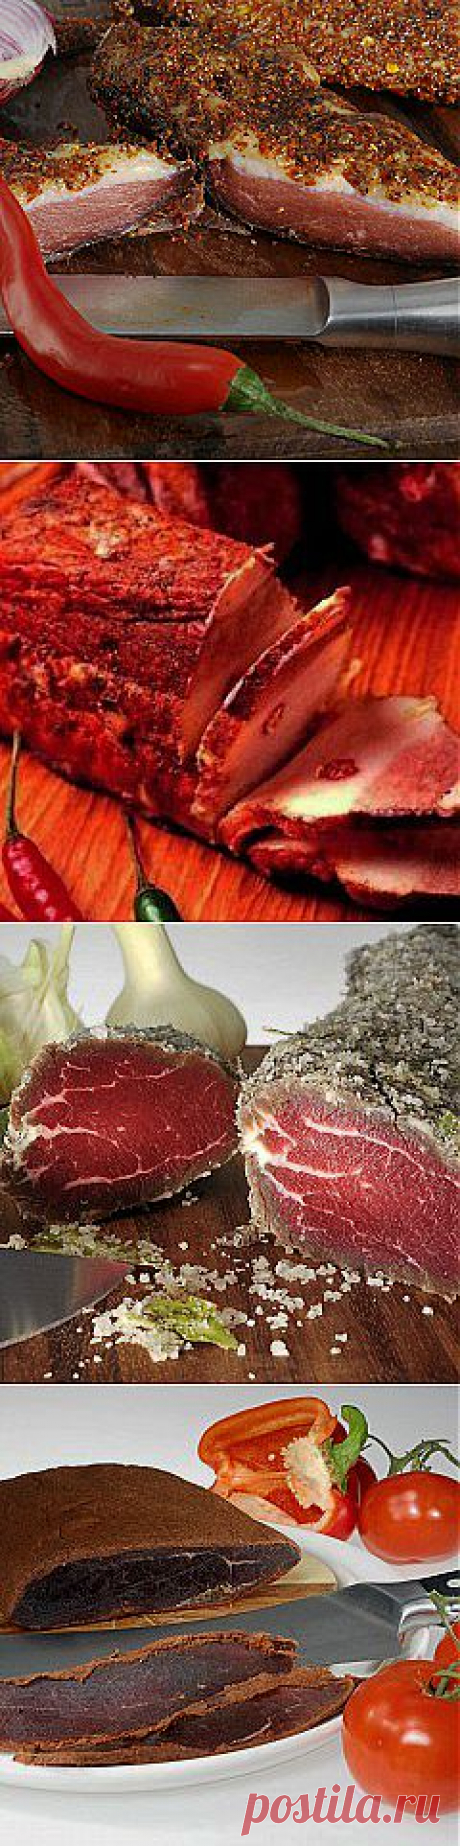 Вяленое и соленое мясо - natasha_5656@mail.ru - Почта Mail.Ru